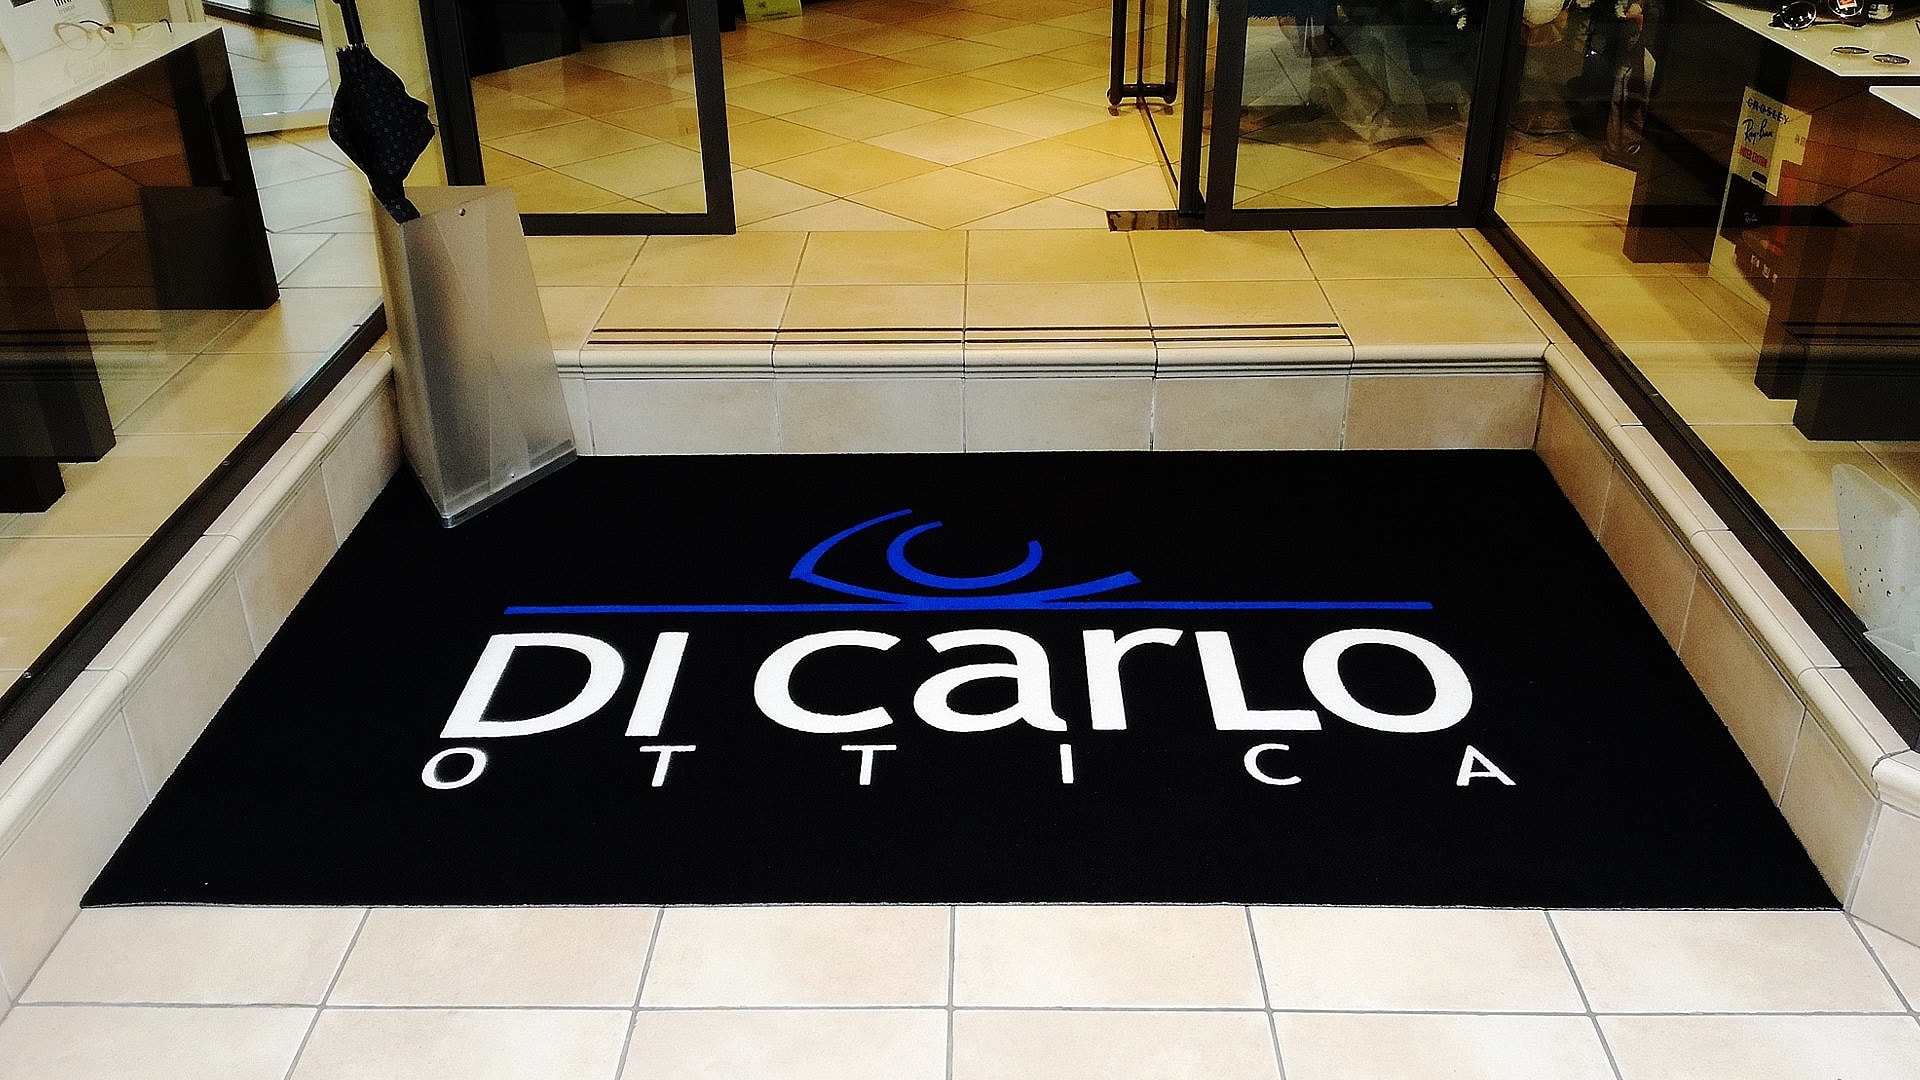 Ingresso di un negozio con un Tappeto intarsiato personalizzato con il logo Di Carlo Ottica di colore nero, blu e bianco